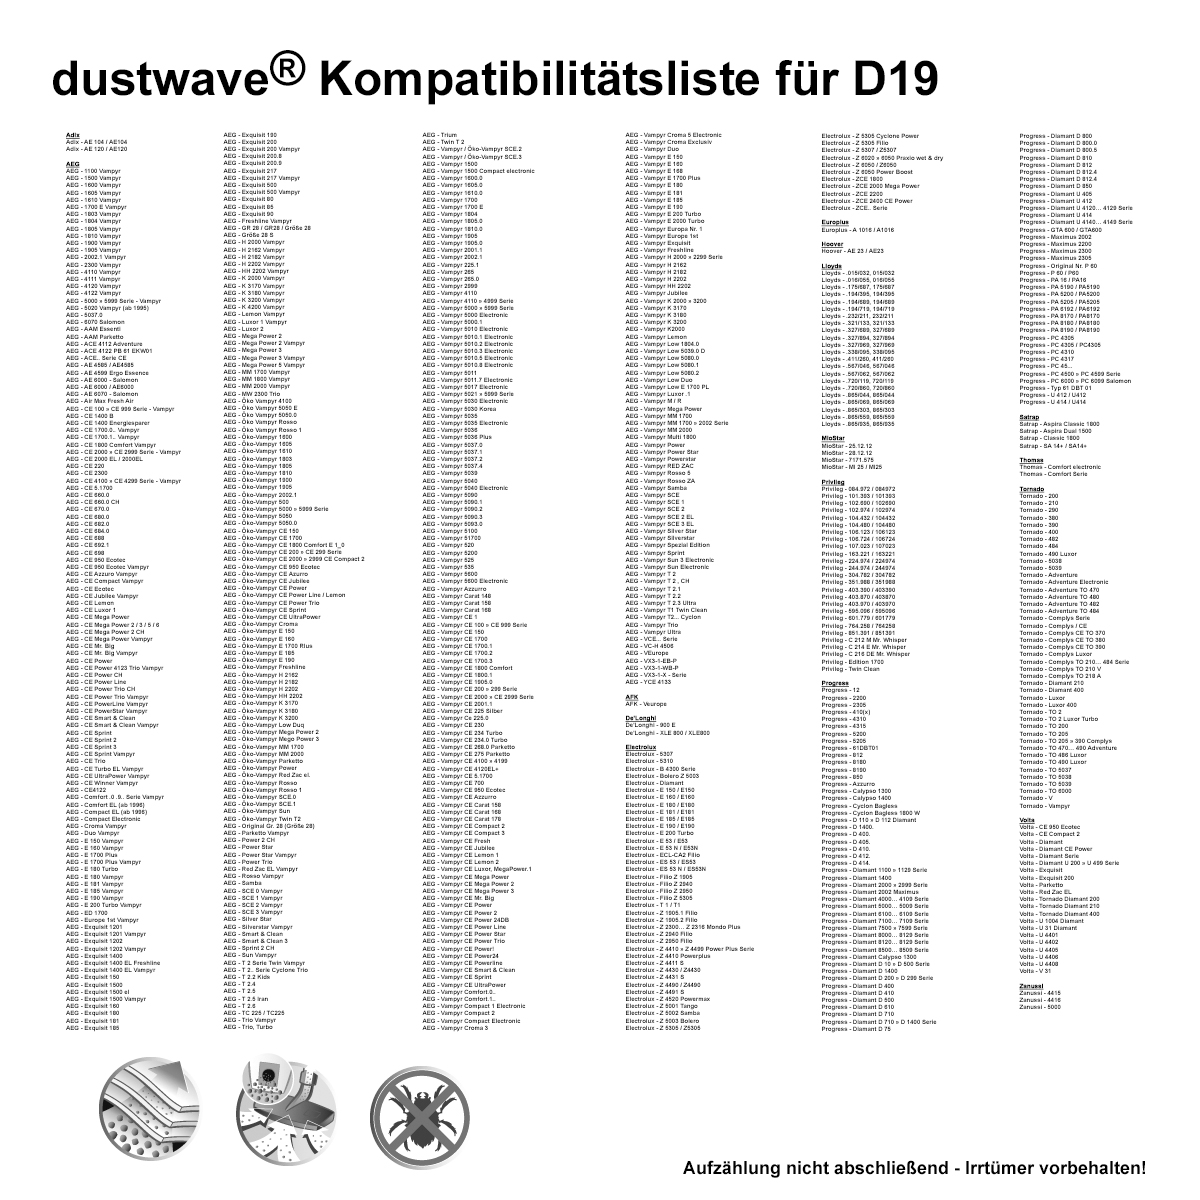 Dustwave® 20 Staubsaugerbeutel für AquaPur AE 700 - hocheffizient, mehrlagiges Mikrovlies mit Hygieneverschluss - Made in Germany